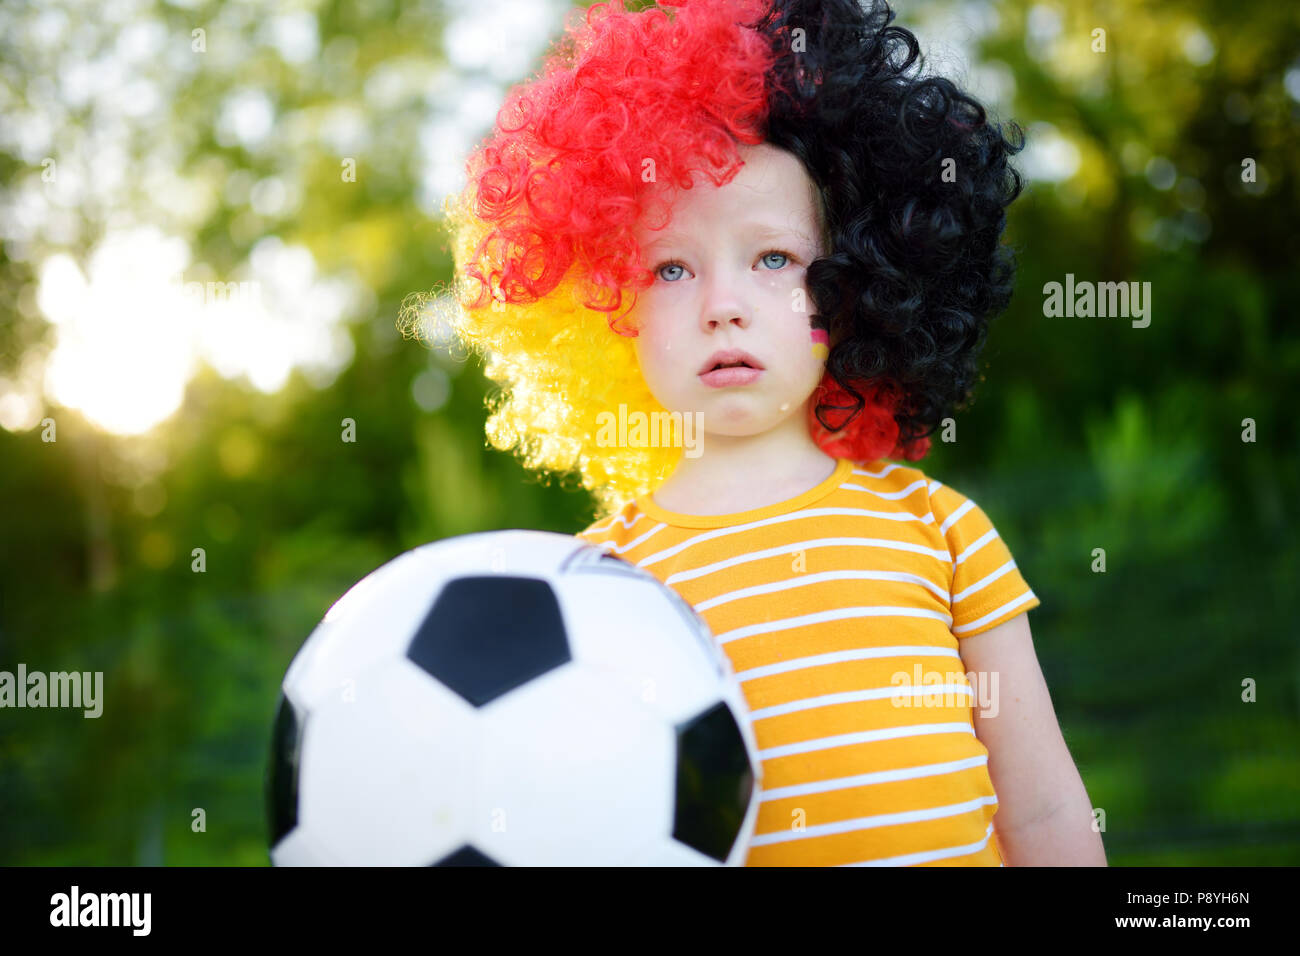 Peu triste enfant allemand pleurer sur sa perte de l'équipe nationale de football en championnat de soccer Banque D'Images